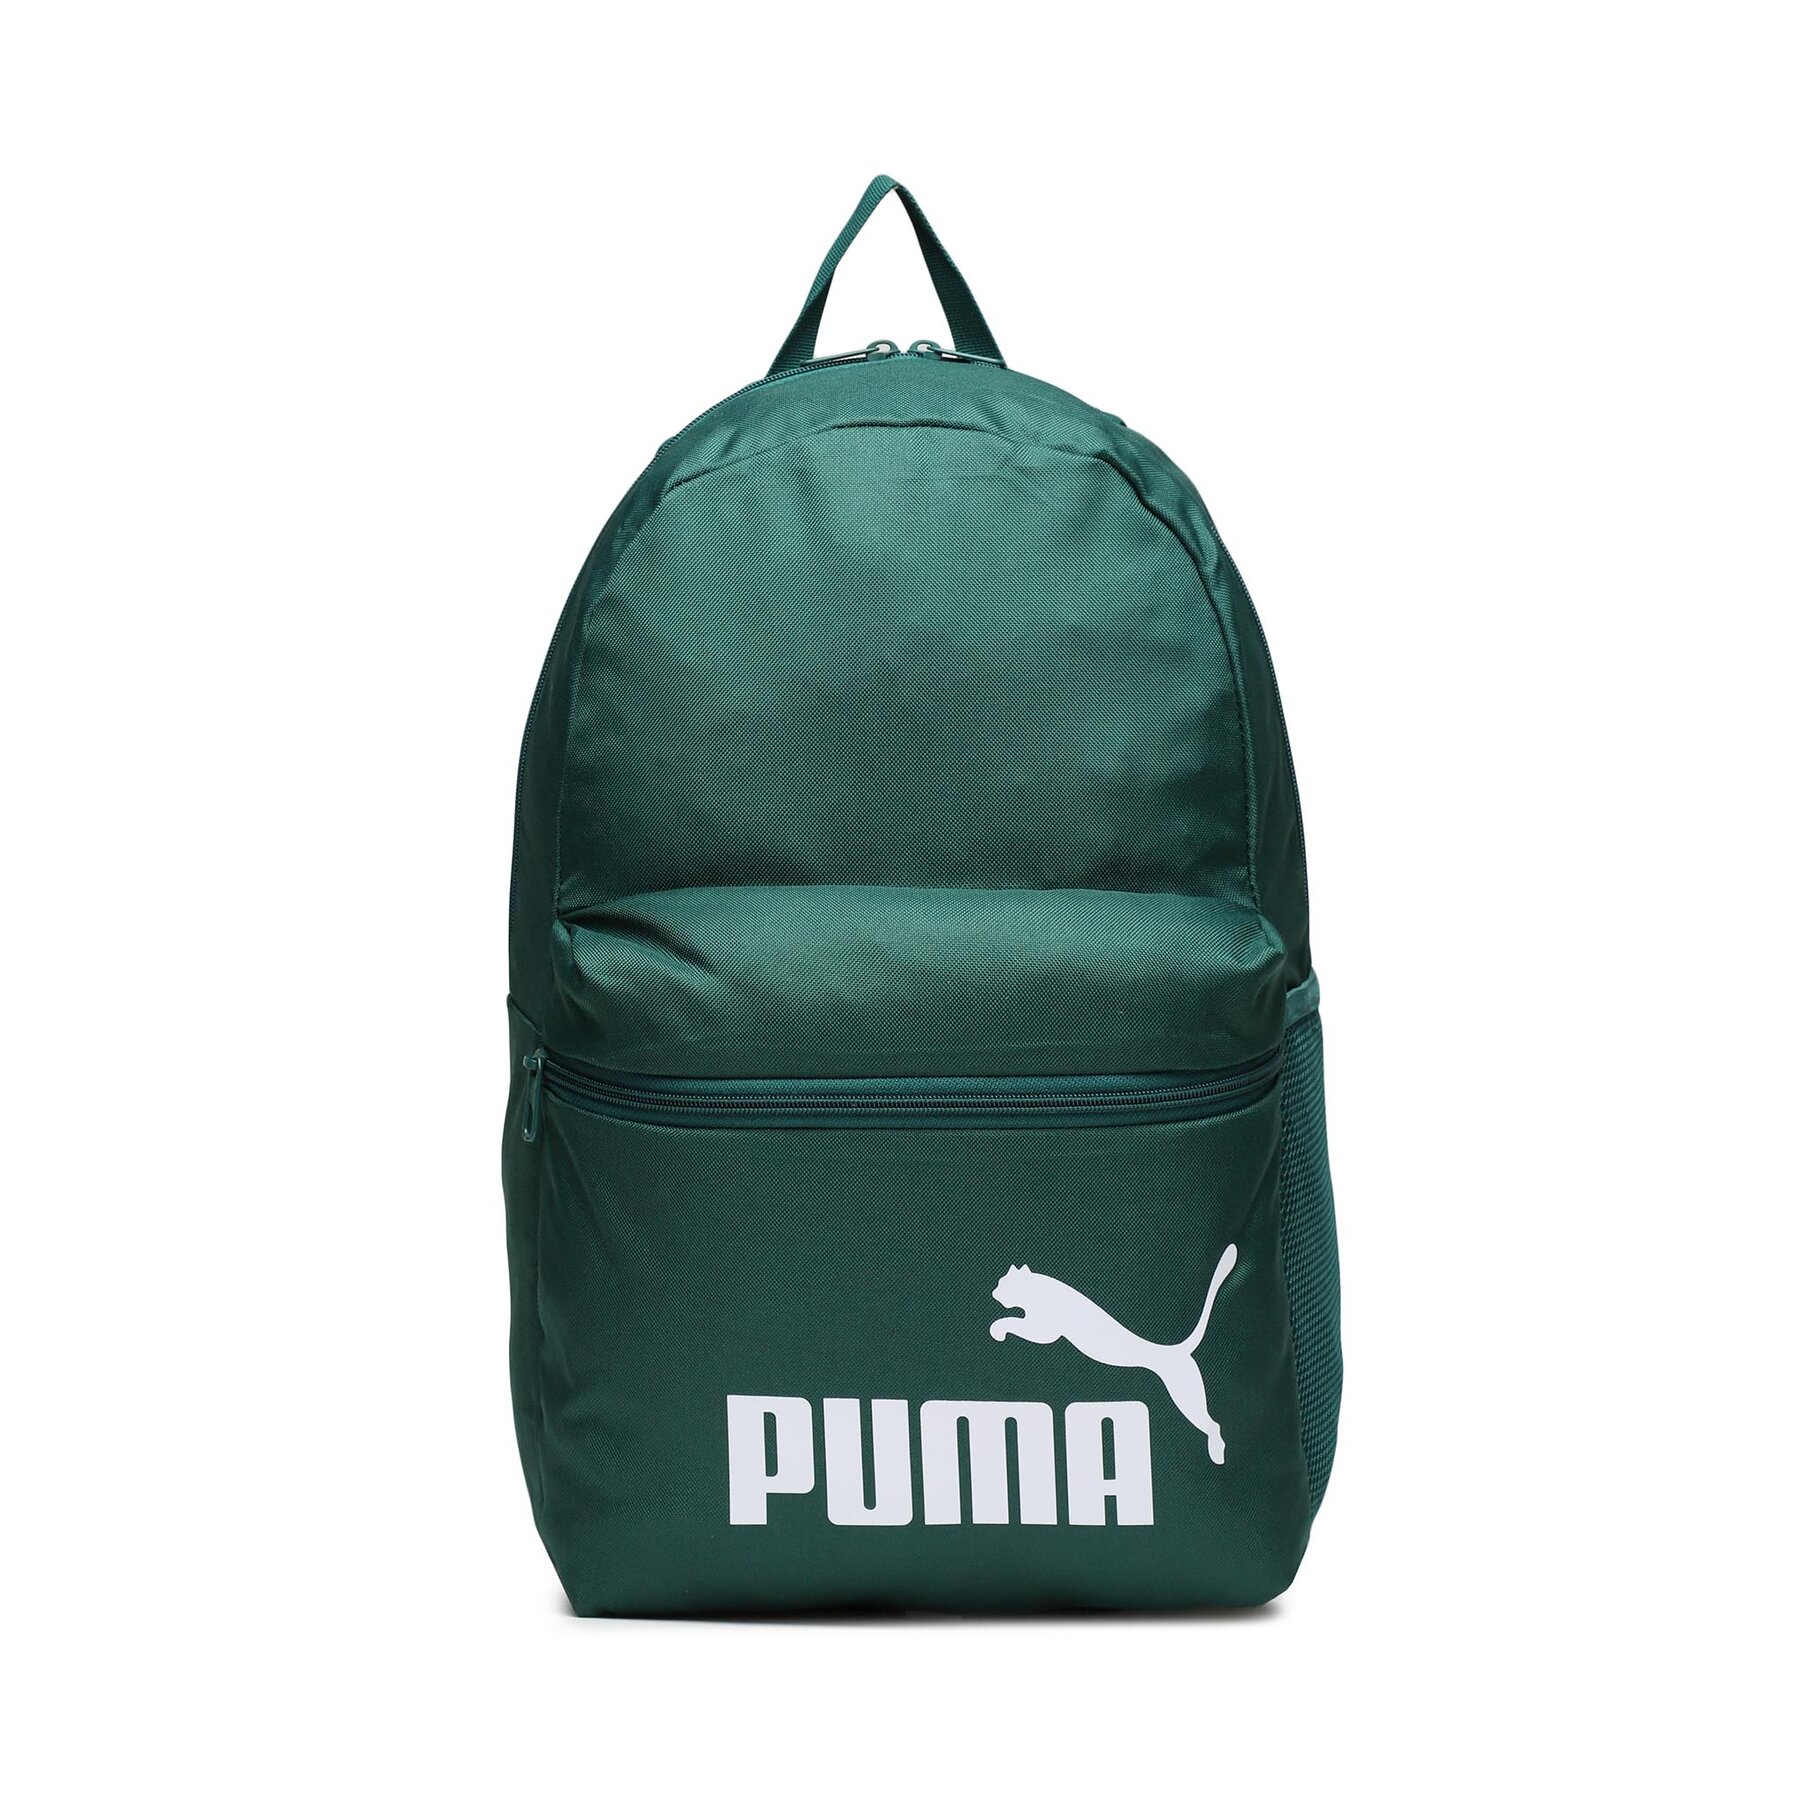 Rucksack Puma Phase Backpack Malachite 079943 09 Malachite von Puma